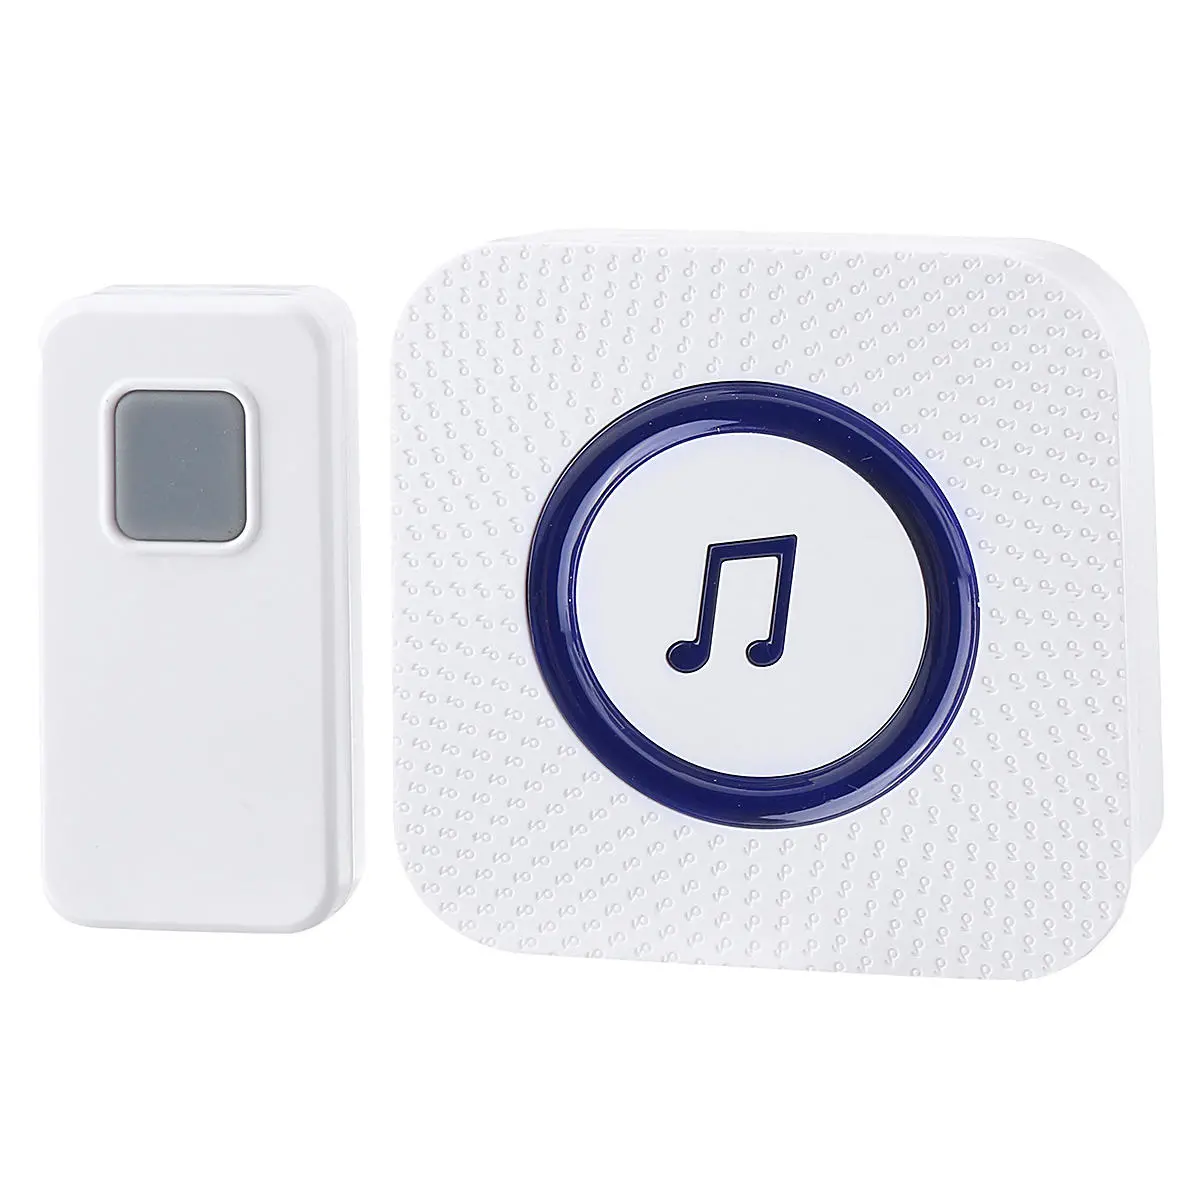 300M Waterproof Wireless Doorbell 55 Songs Chime LED Flash EU US UK AU Plug